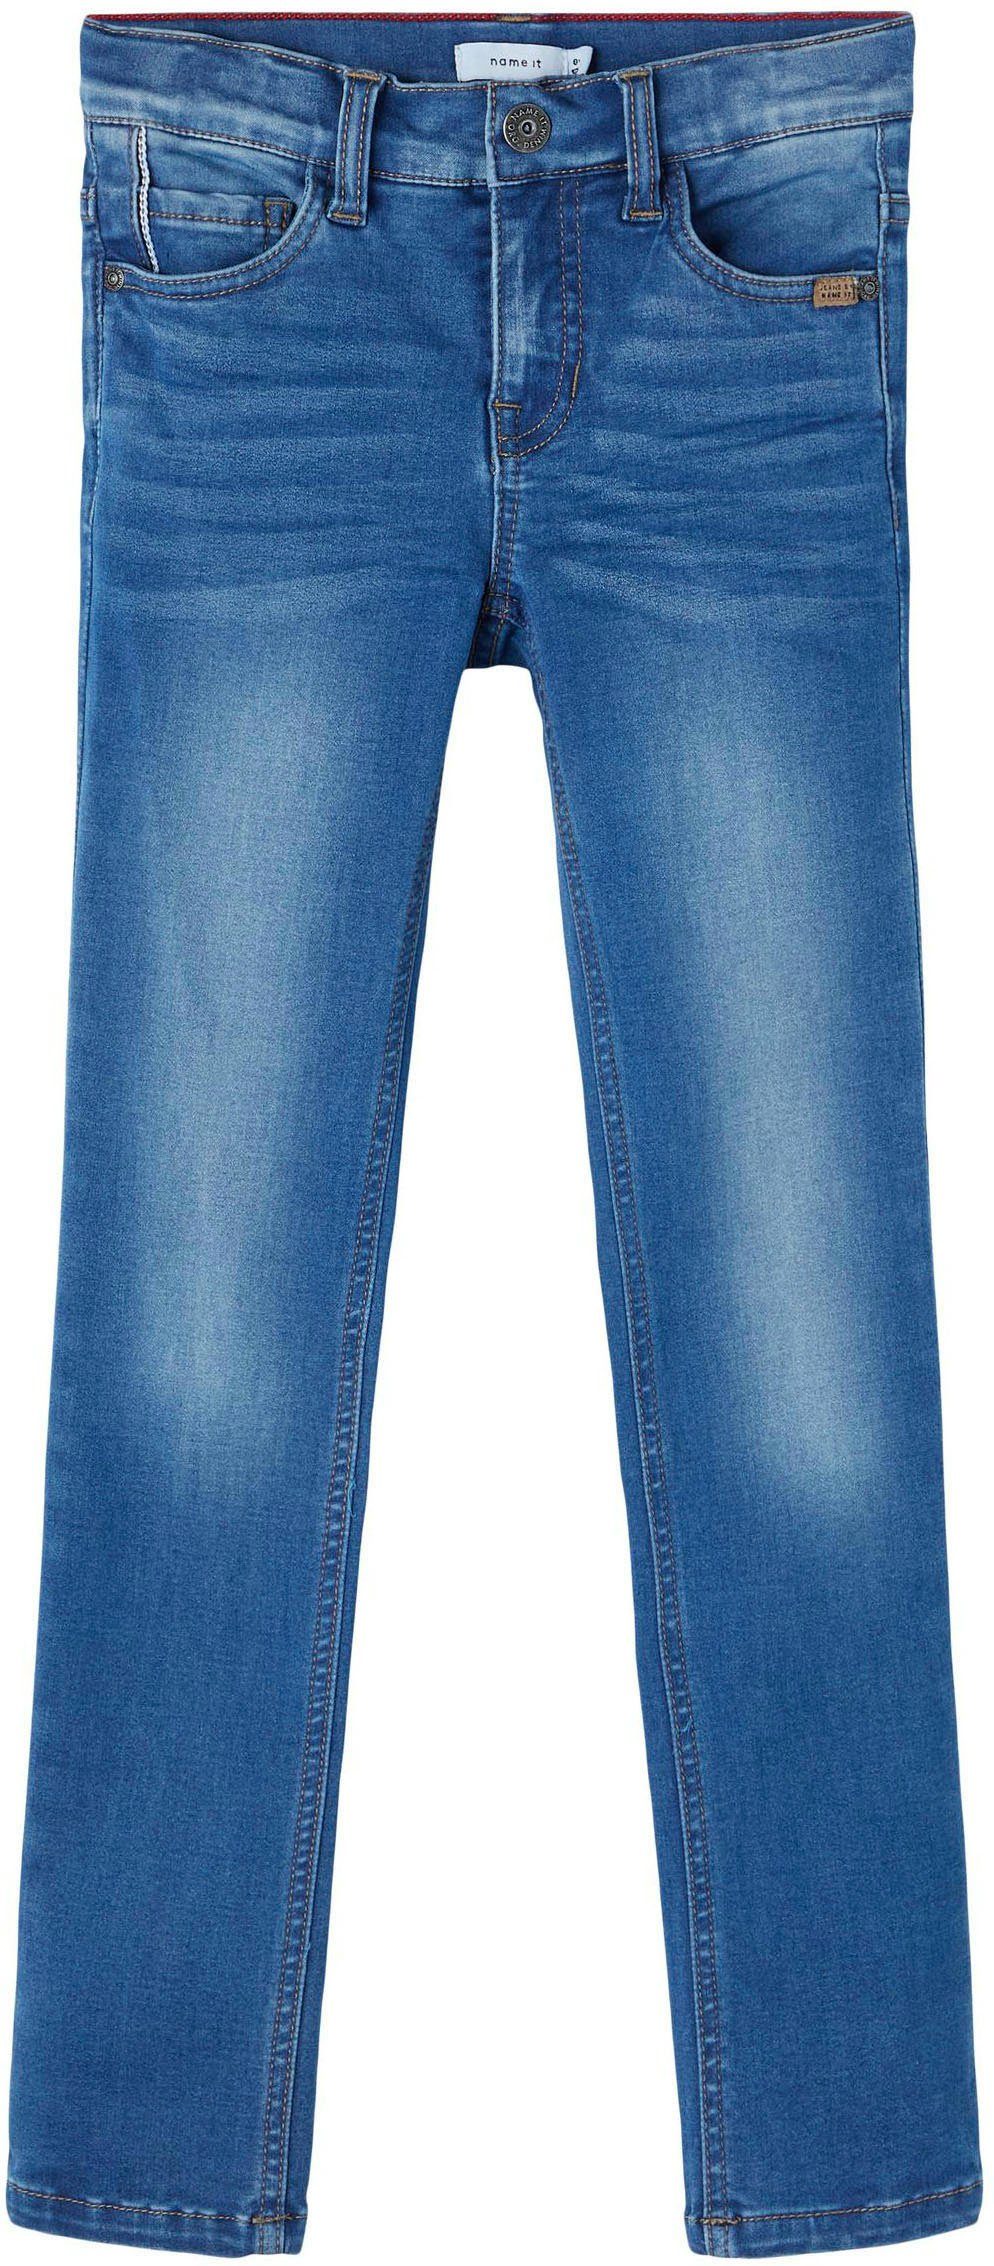 Name blue It denim Stretch-Jeans medium